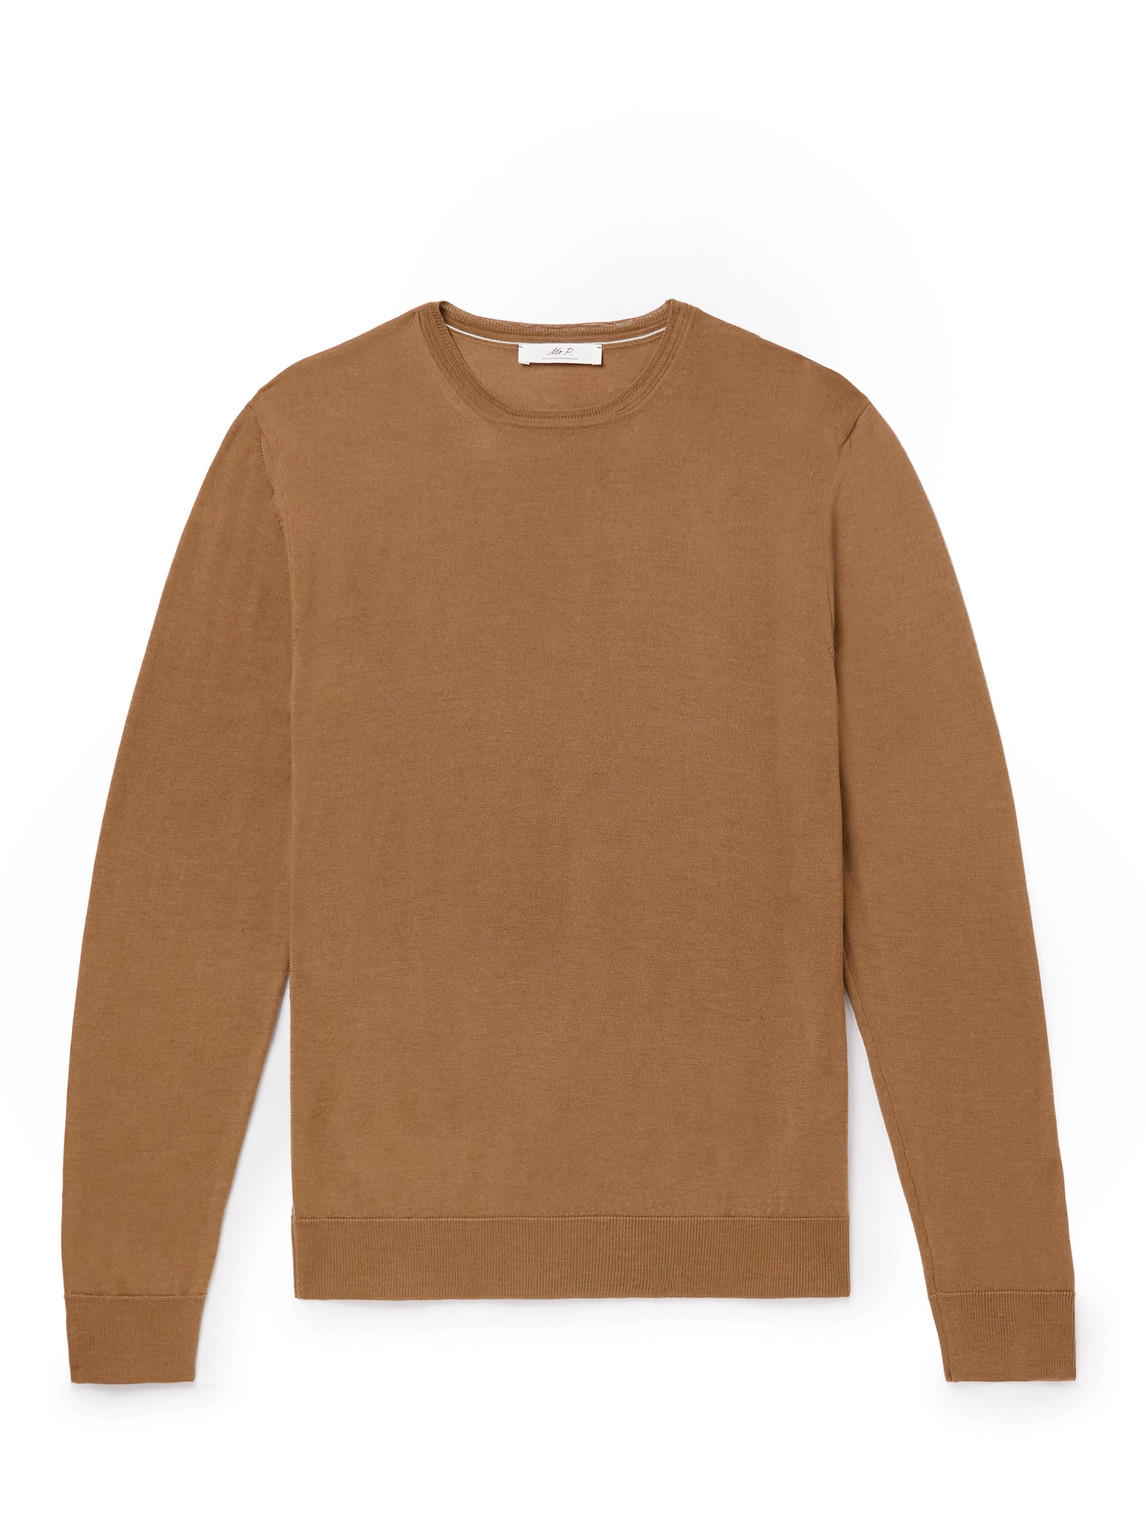 Mr P. - Slim-Fit Merino Wool Sweater - Men - Brown - XS for Men